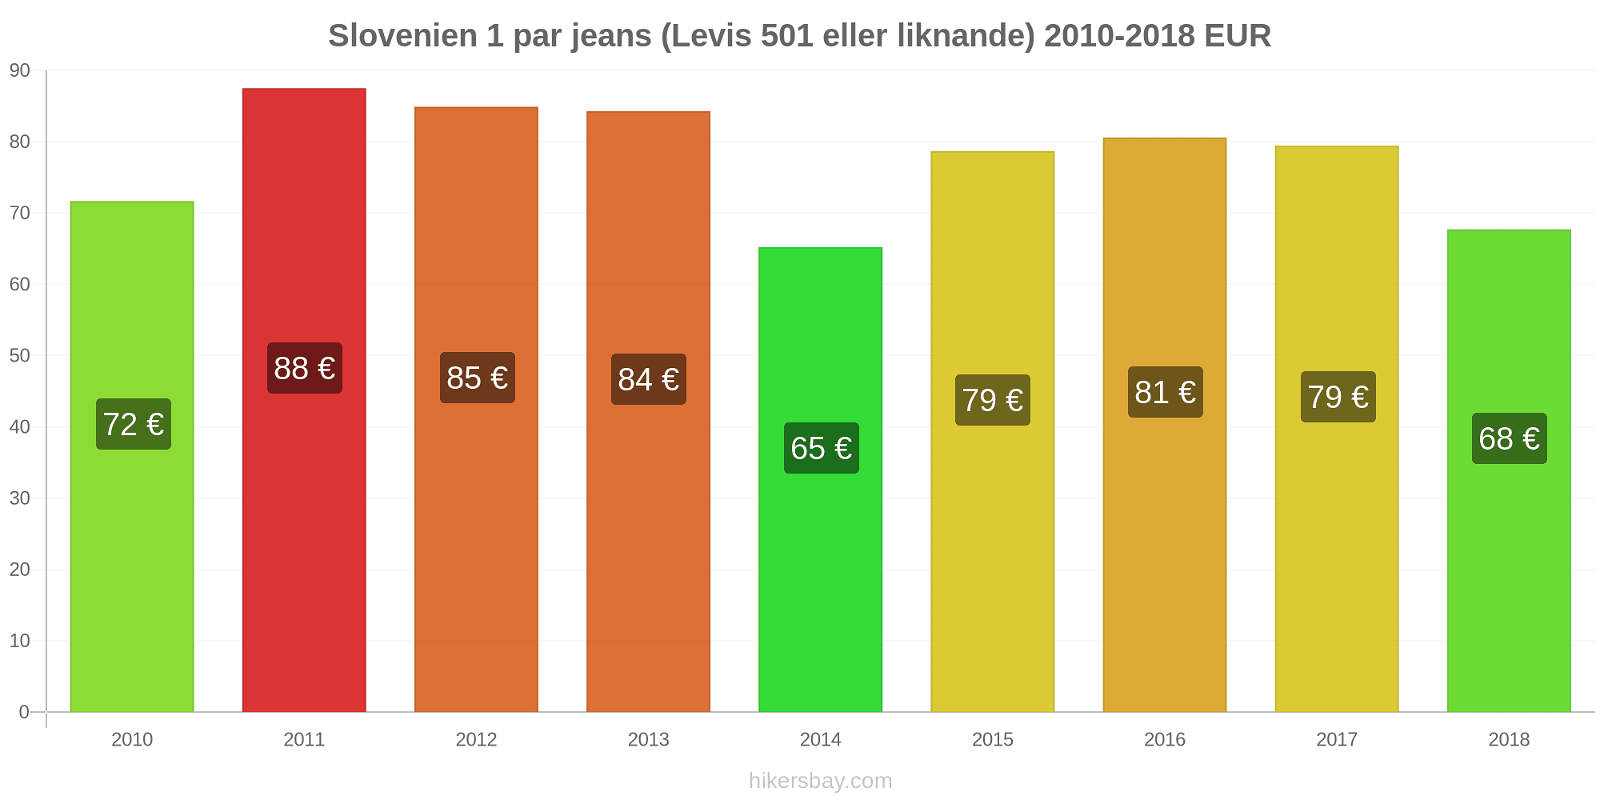 Slovenien prisändringar 1 par jeans (Levis 501 eller liknande) hikersbay.com